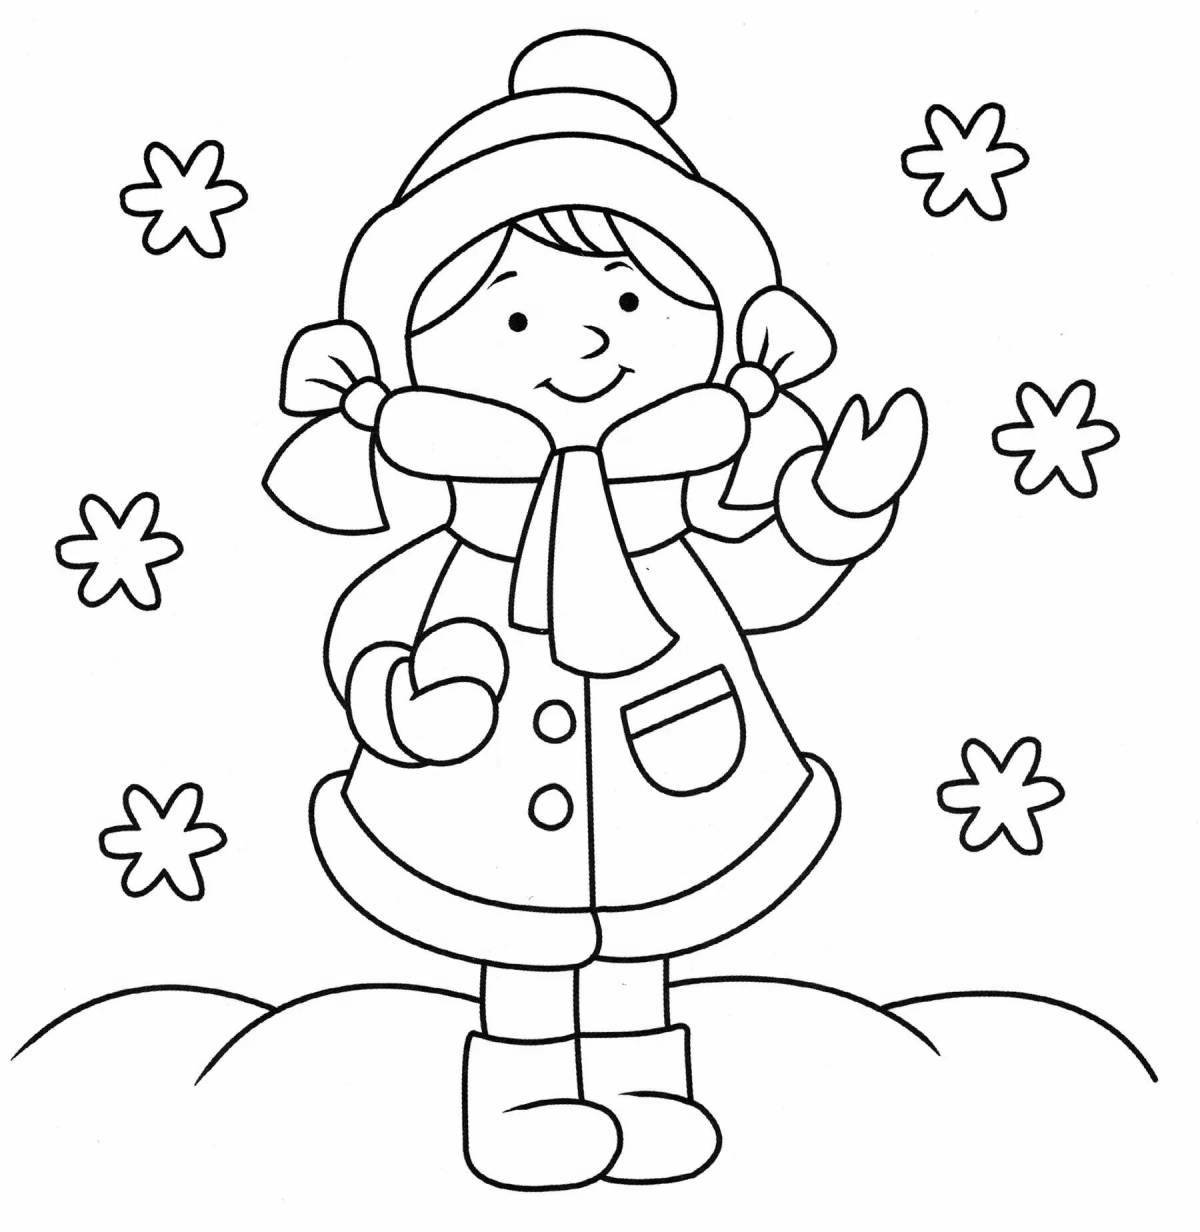 Прекрасная раскраска для детей мальчик в зимней одежде